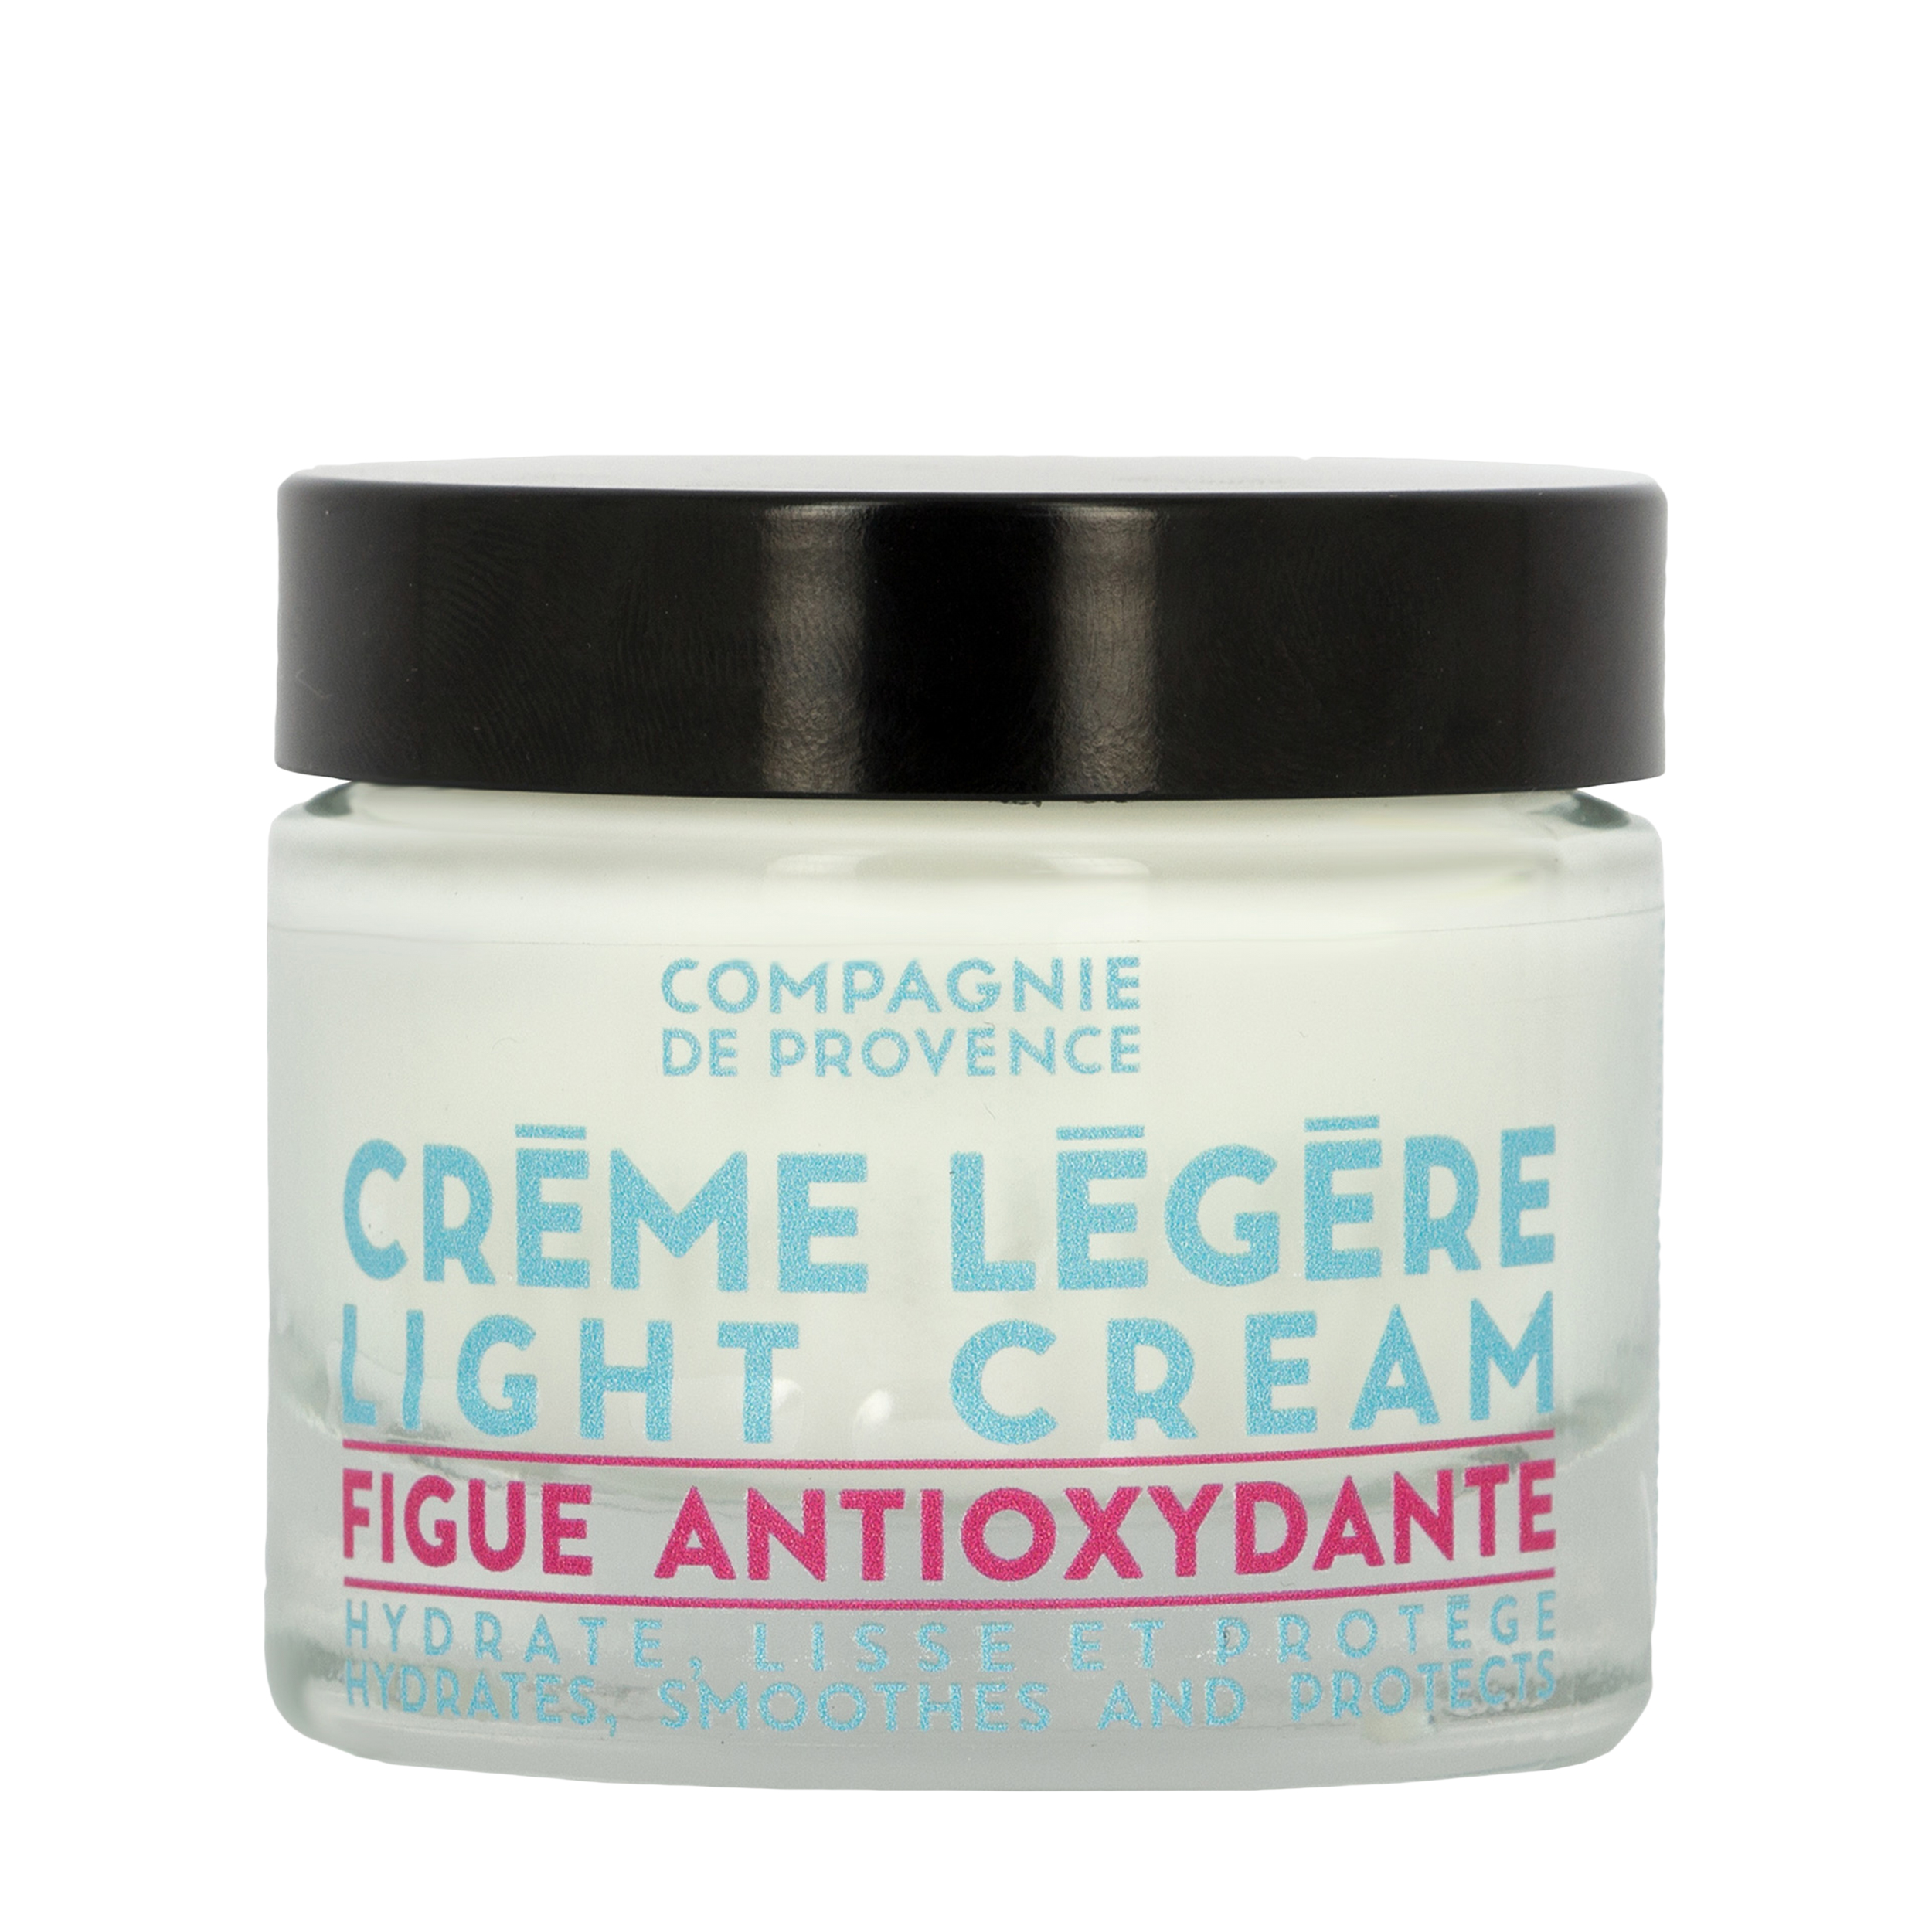 COMPAGNIE DE PROVENCE COMPAGNIE DE PROVENCE Легкий крем для лица с антиоксидантами Figue Antioxydante Light Cream 50 мл